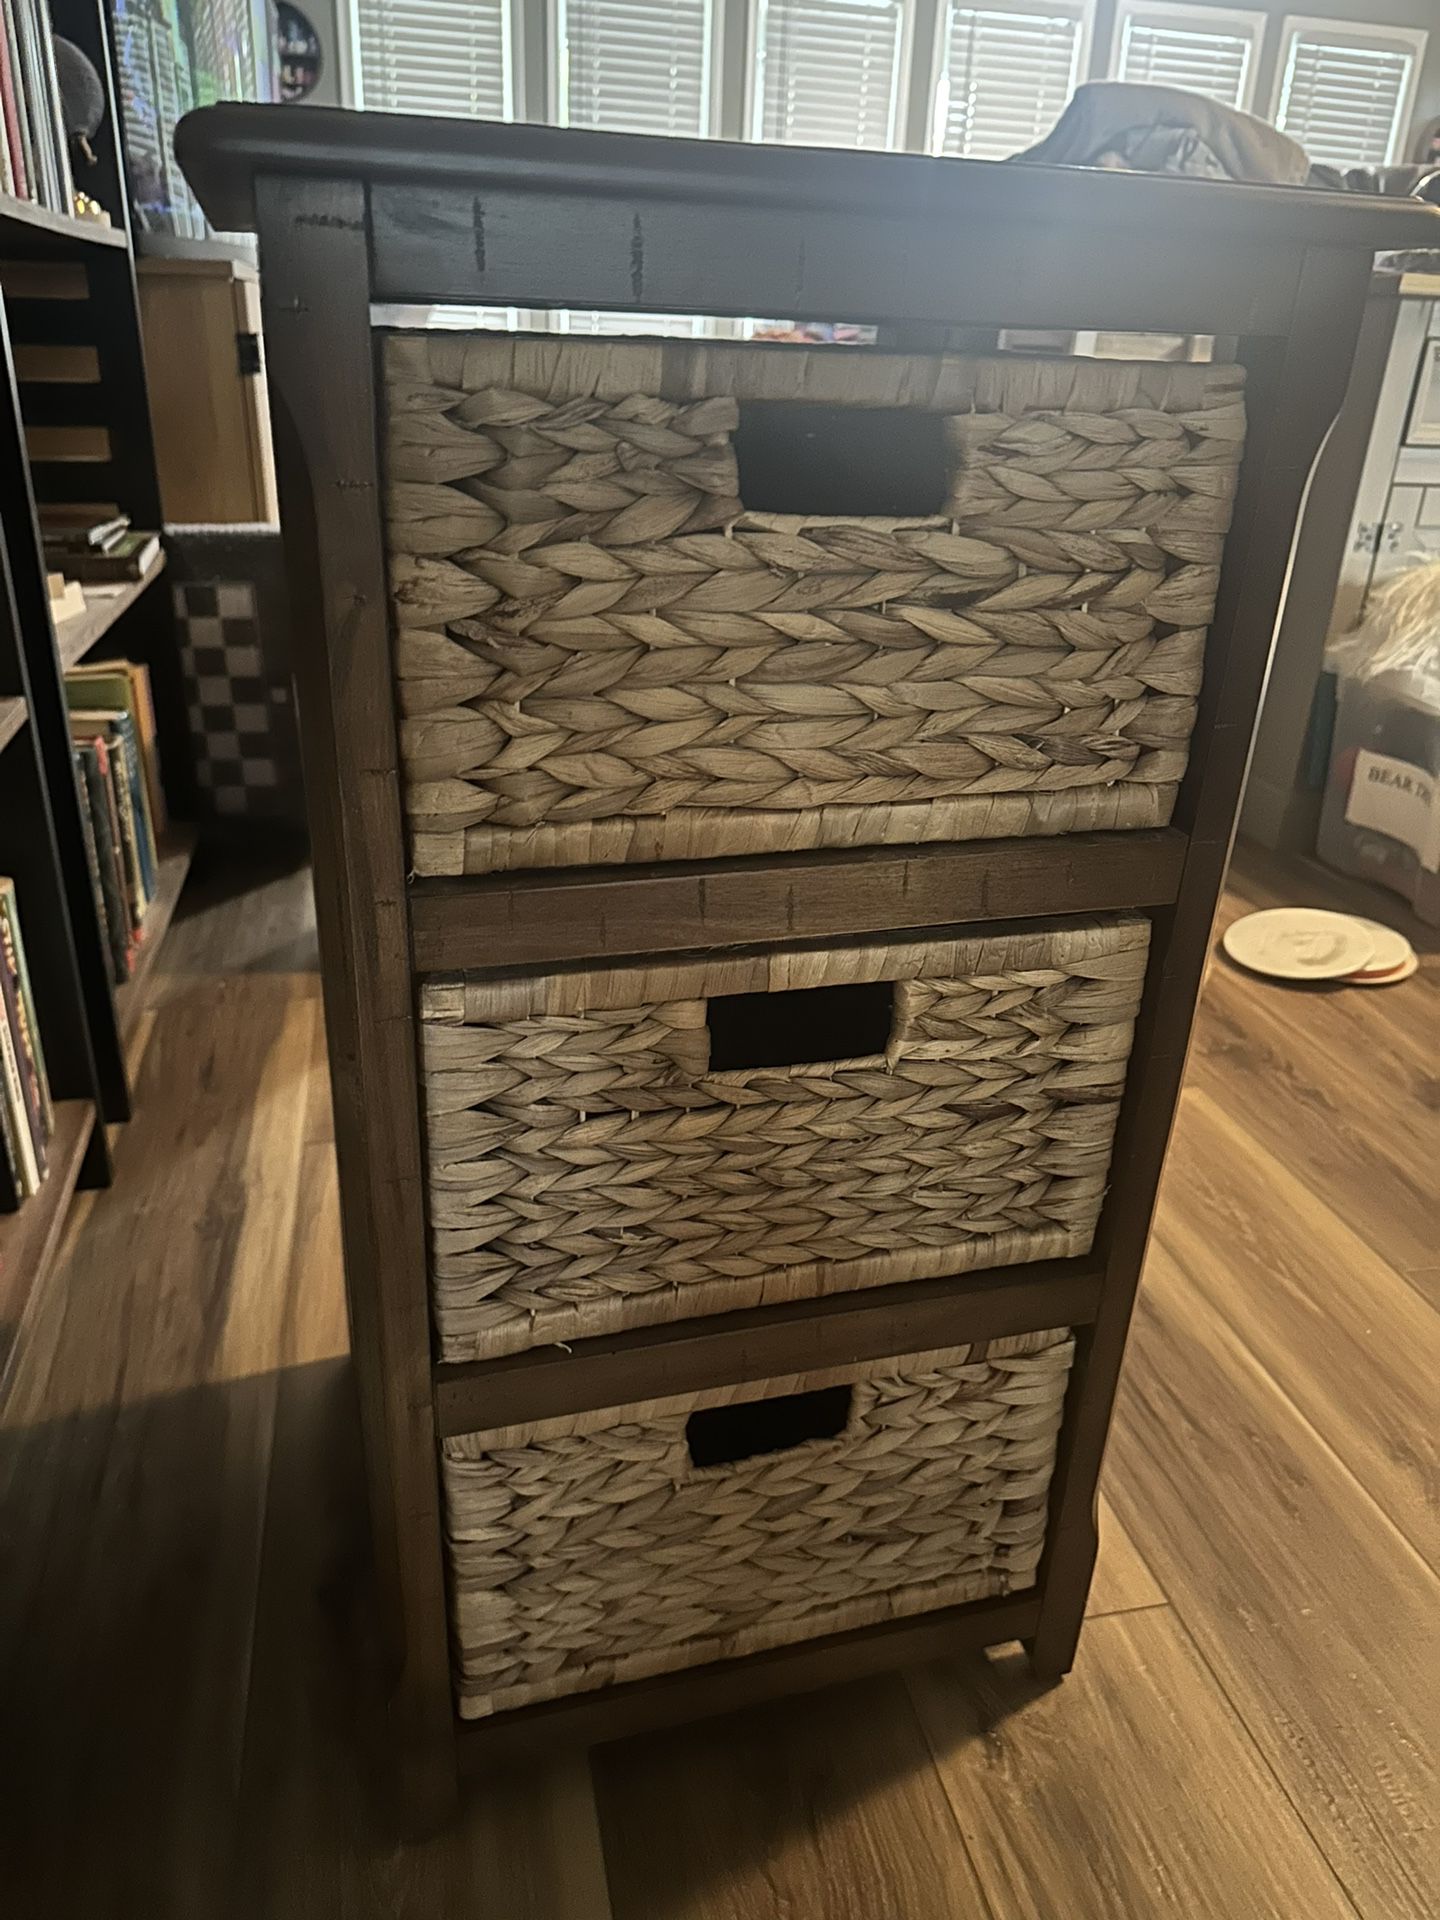 Safavieh 3 Tier Storage Shelf With Wicker Baskets New Retails For $125